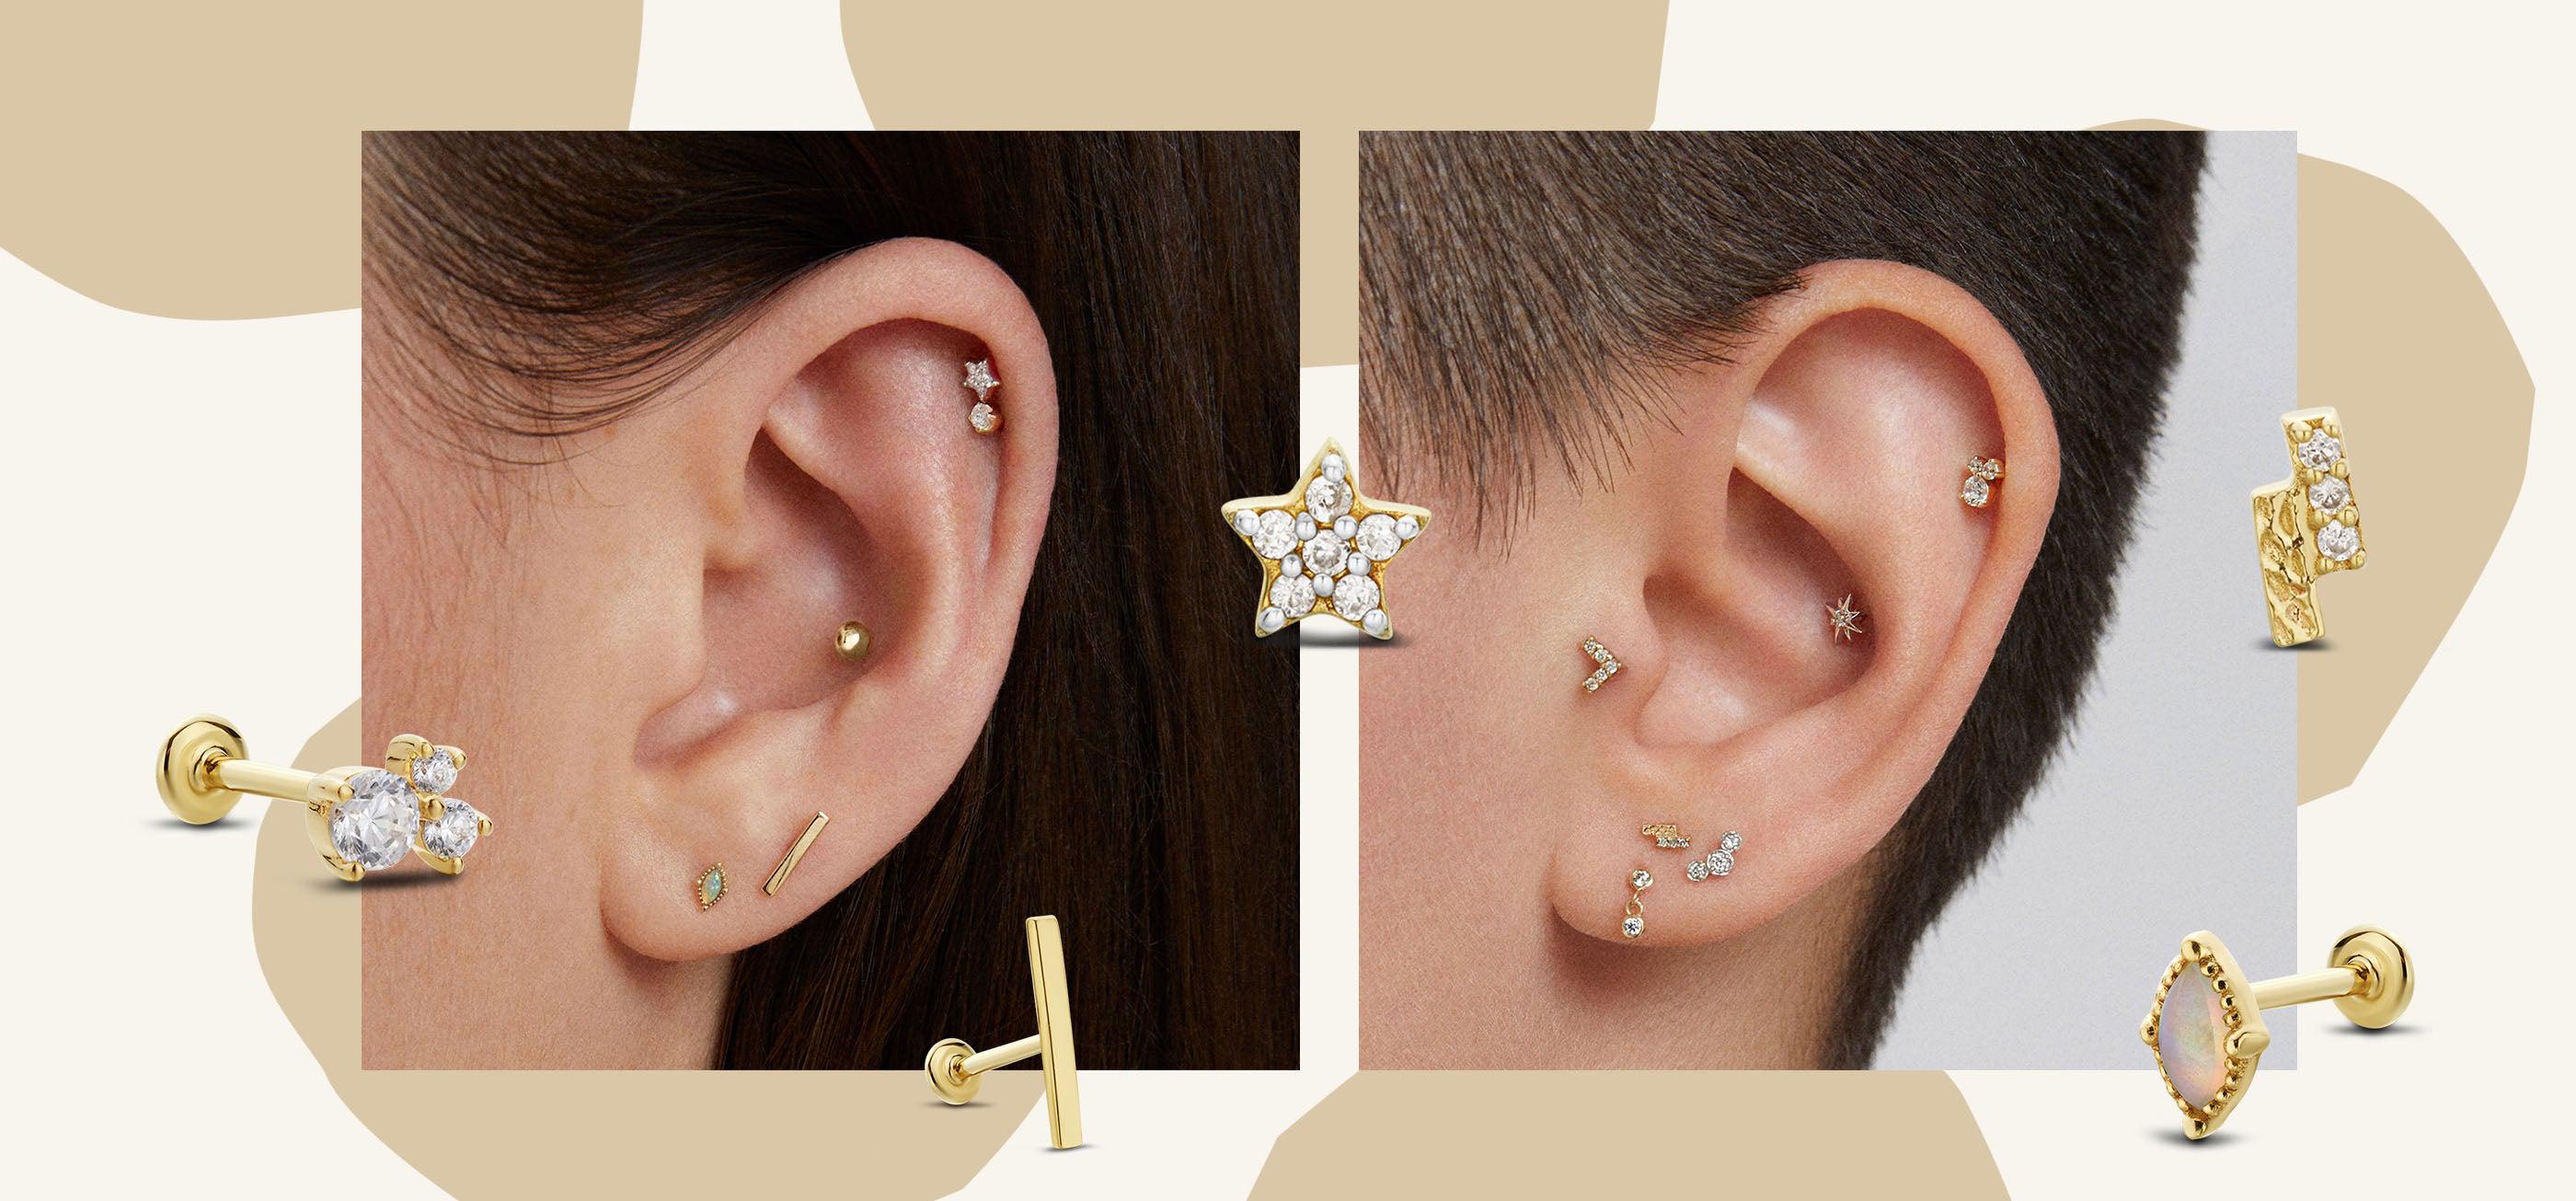 Share more than 116 earrings back side best